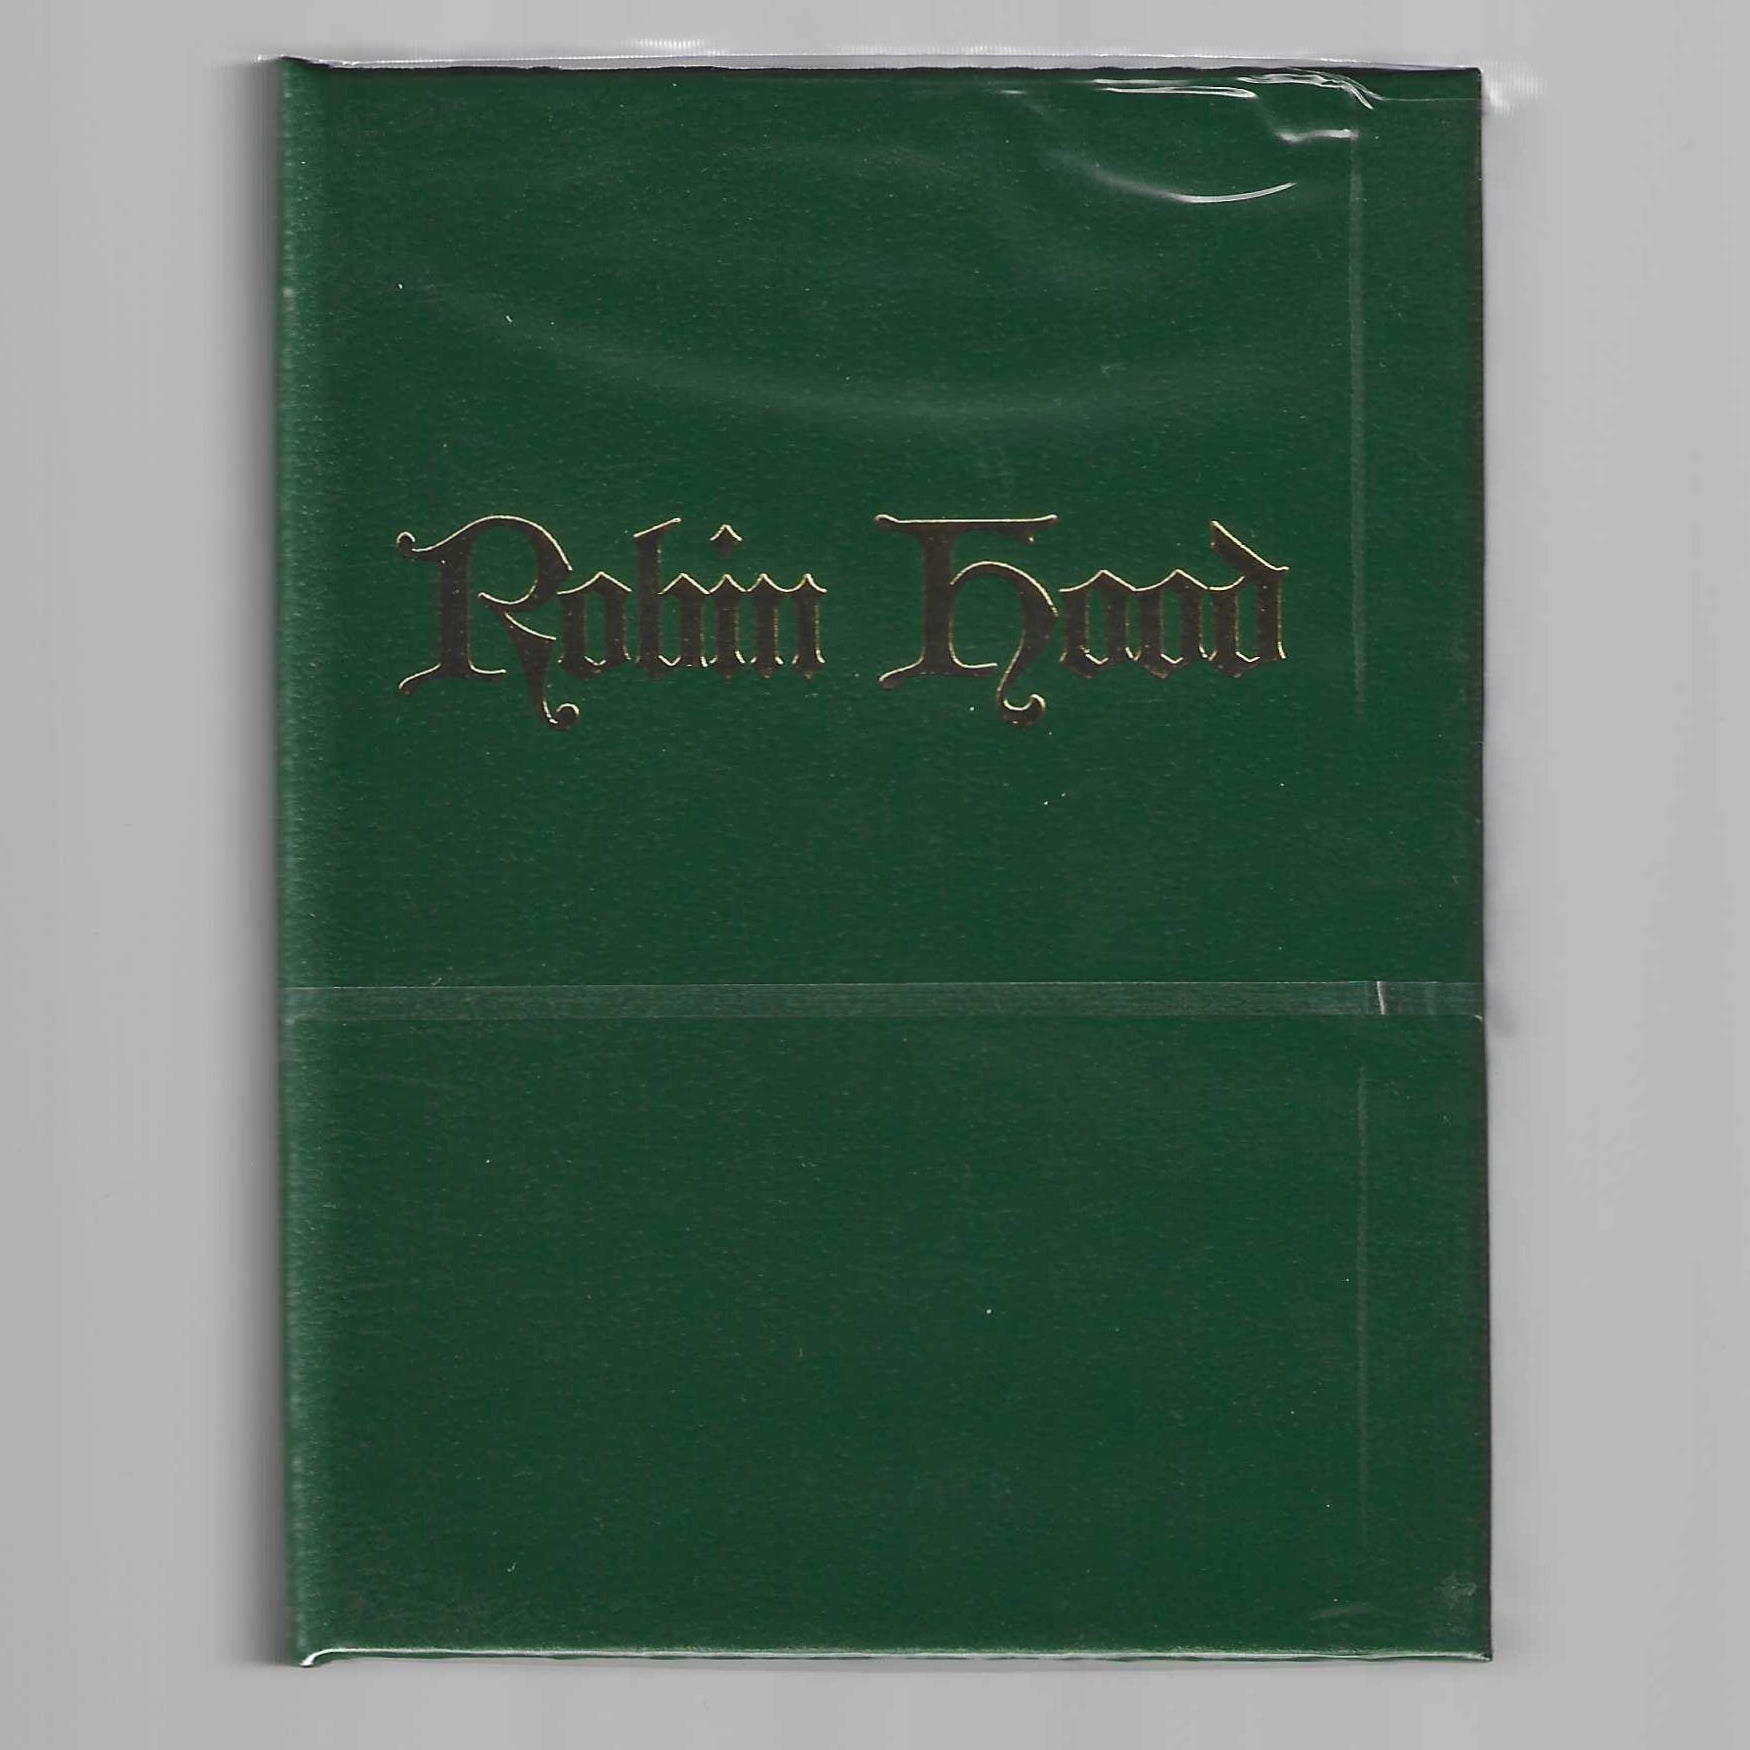 Robin Hood (GILDED EDITION #021/300) [AUCTION]